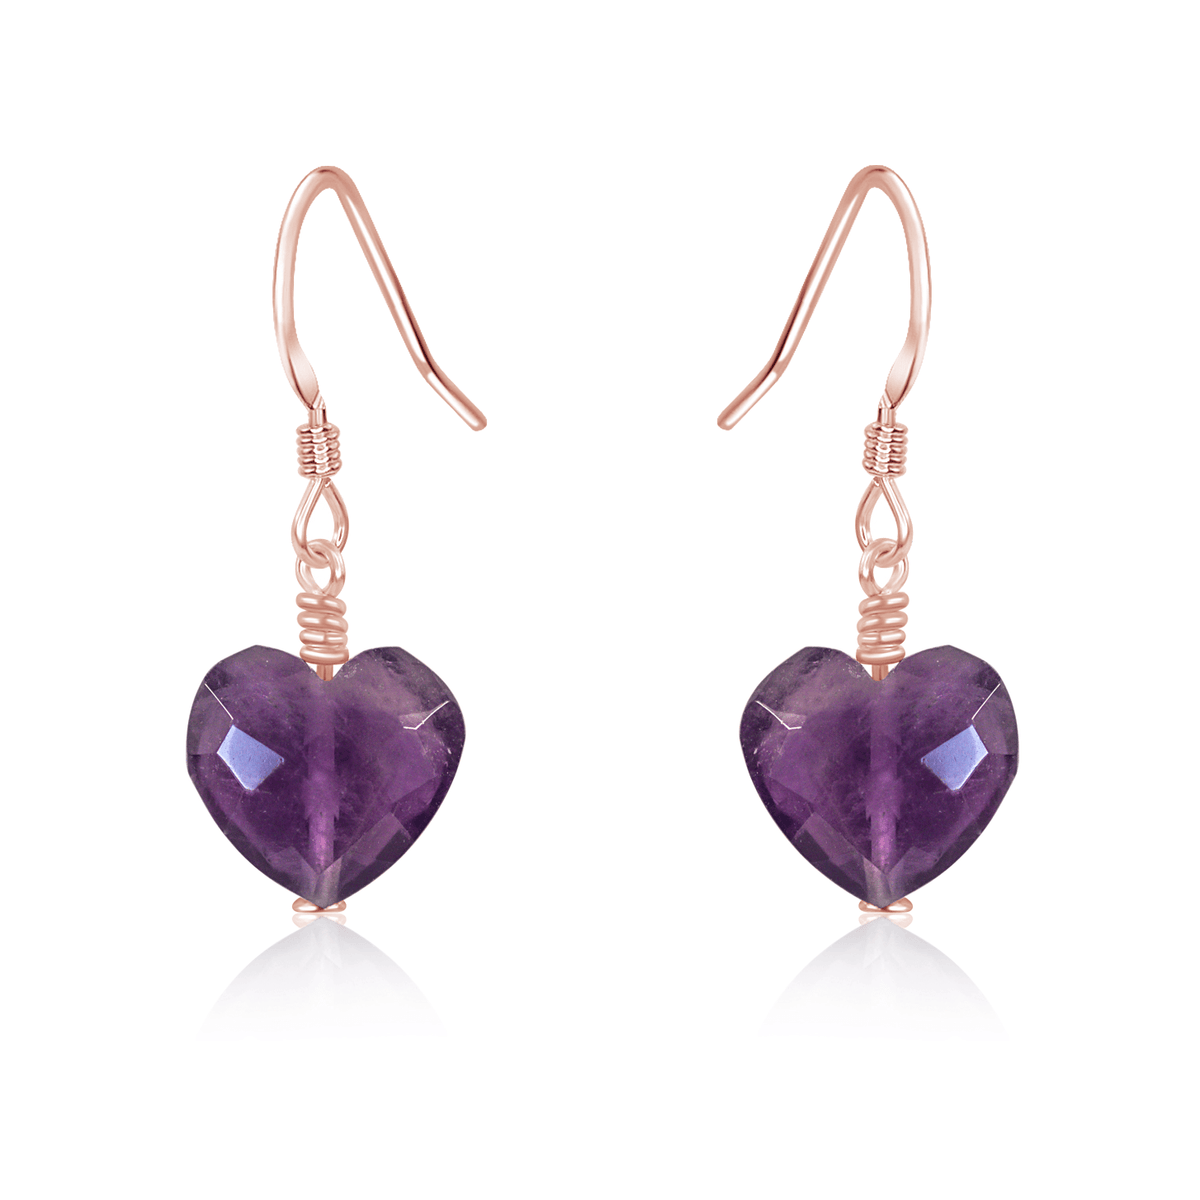 Amethyst Crystal Heart Dangle Earrings - Amethyst Crystal Heart Dangle Earrings - 14k Rose Gold Fill - Luna Tide Handmade Crystal Jewellery